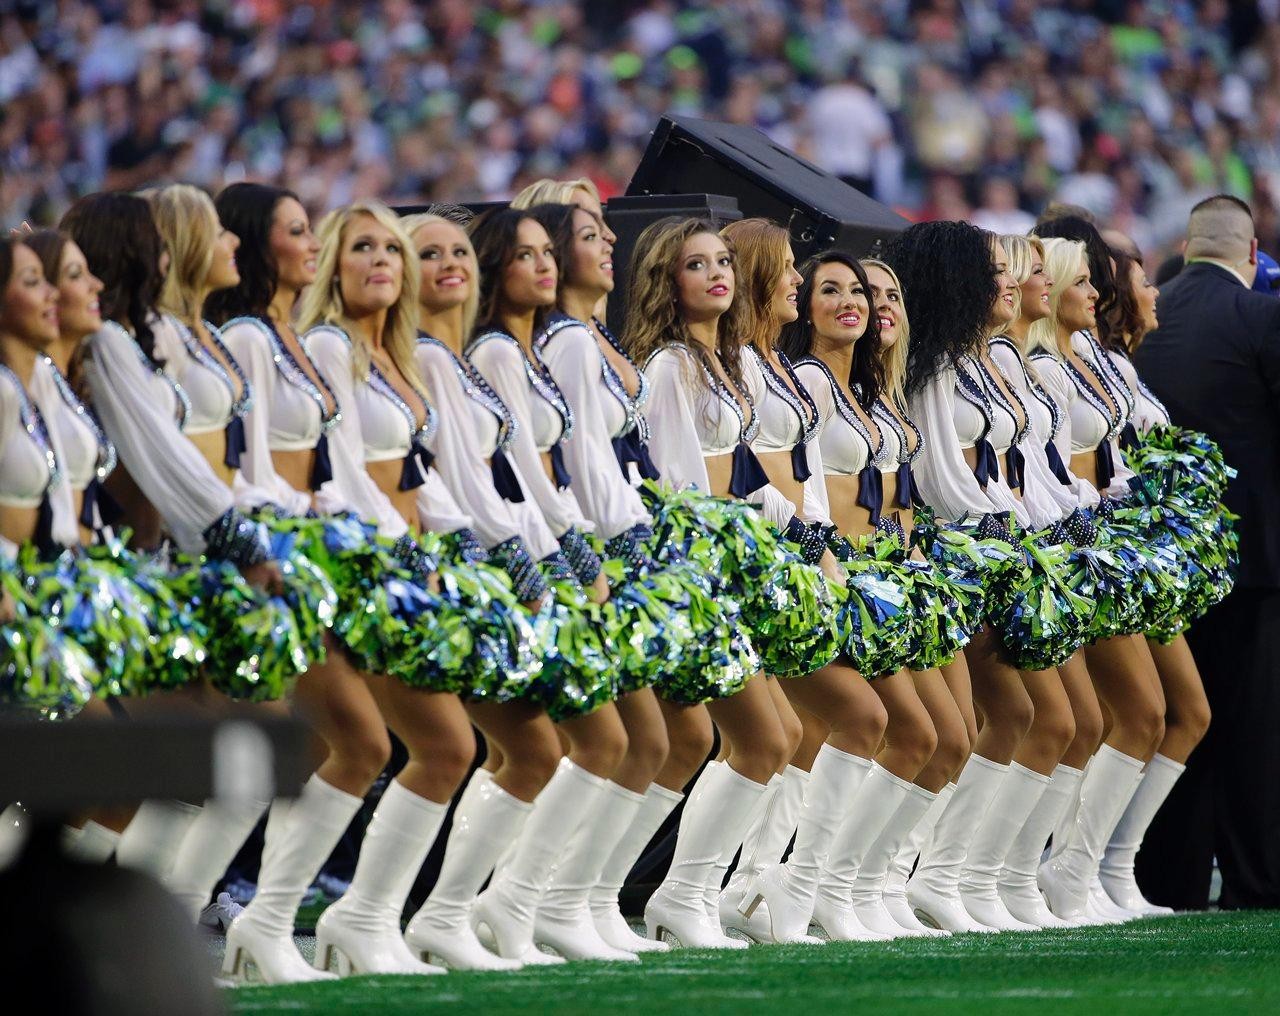 People 1280x1016 cheerleaders group of women knee-high boots crop top women smiling standing